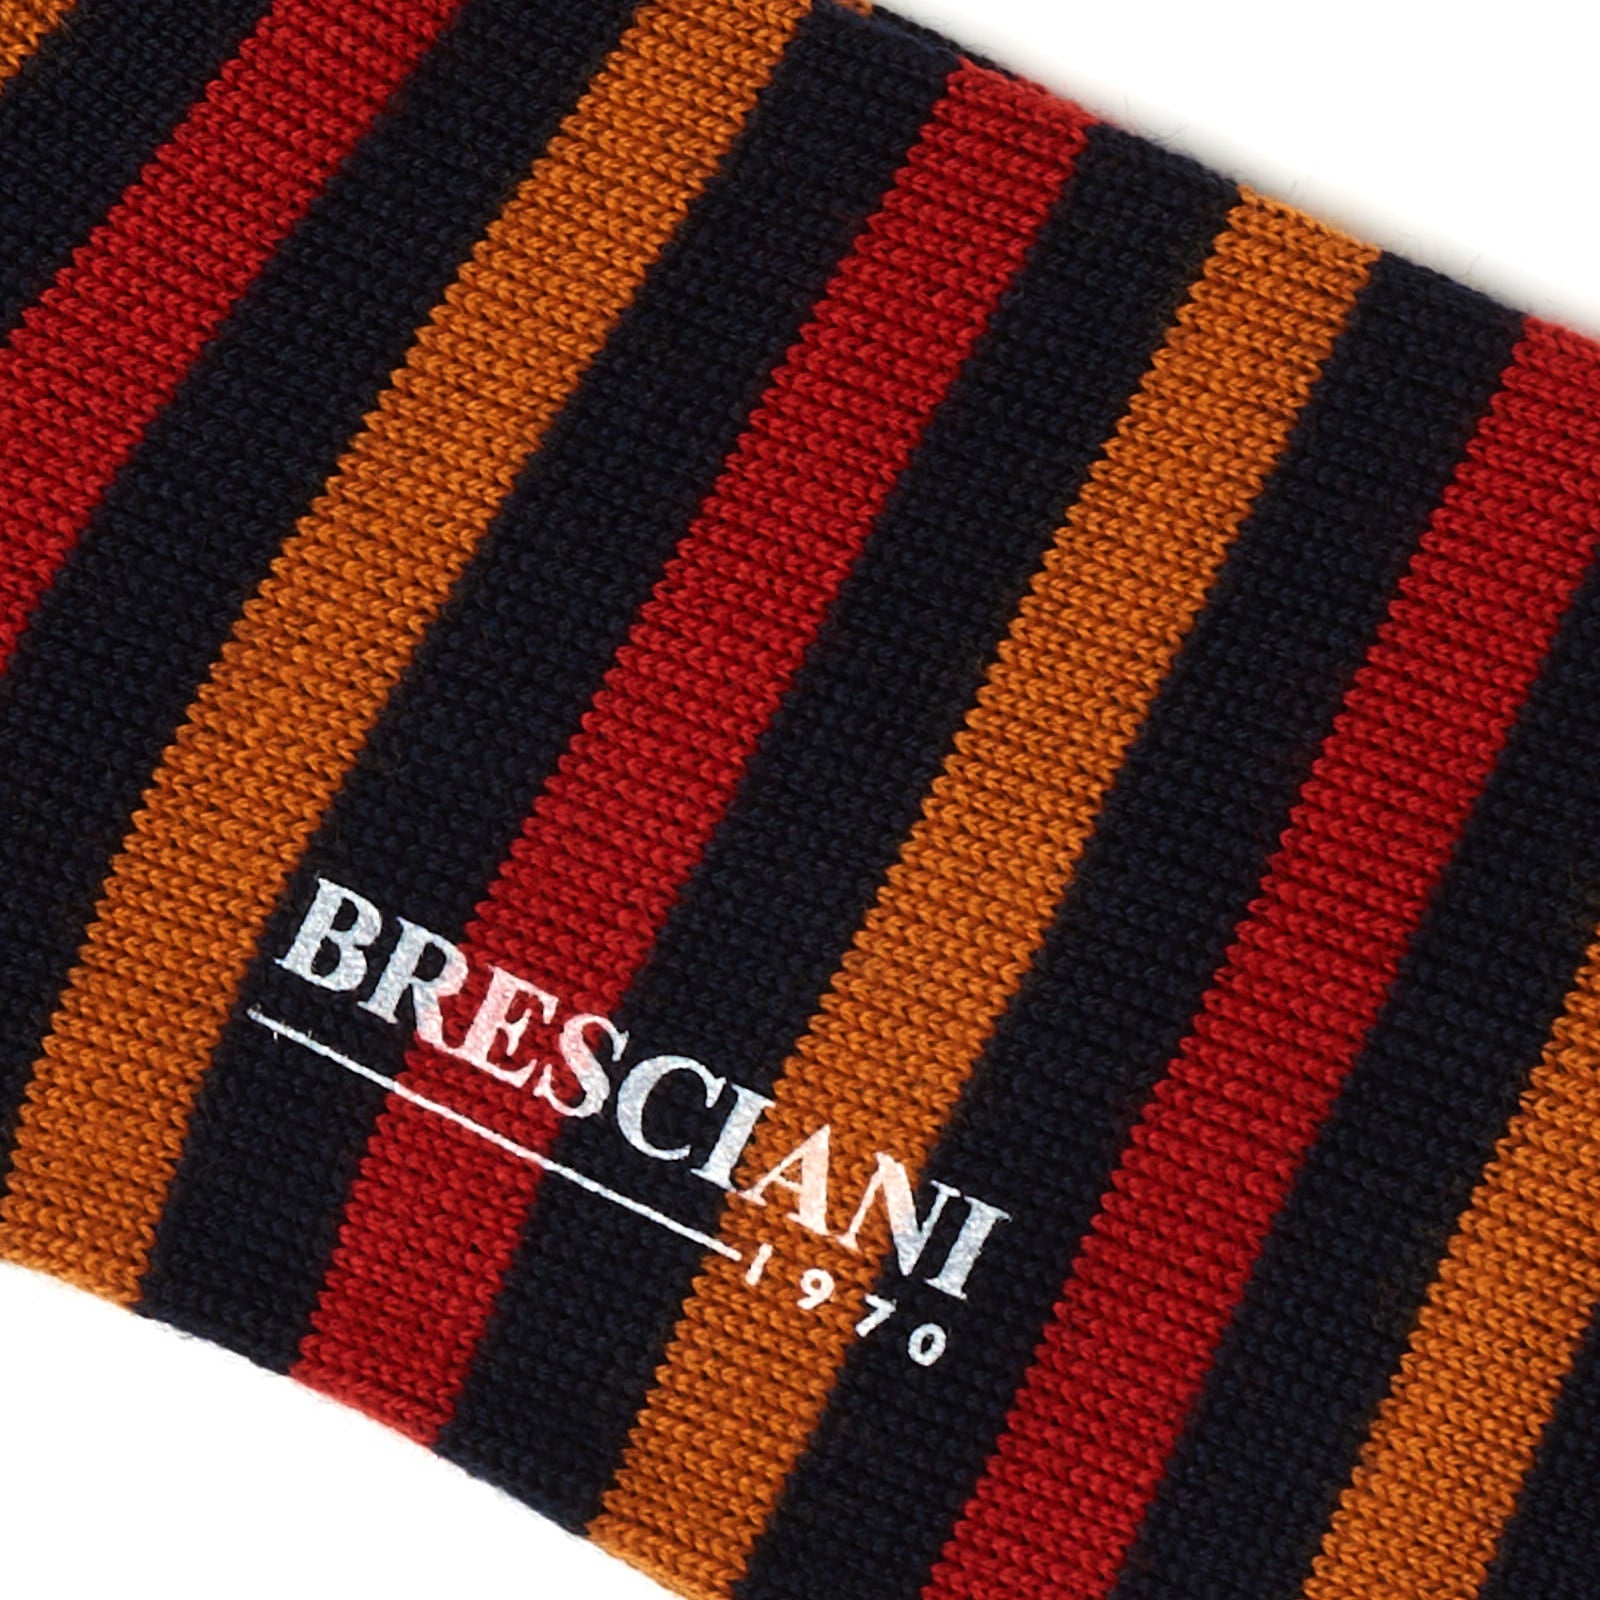 BRESCIANI Wool Balanced Striped Mid Calf Length Socks M-L